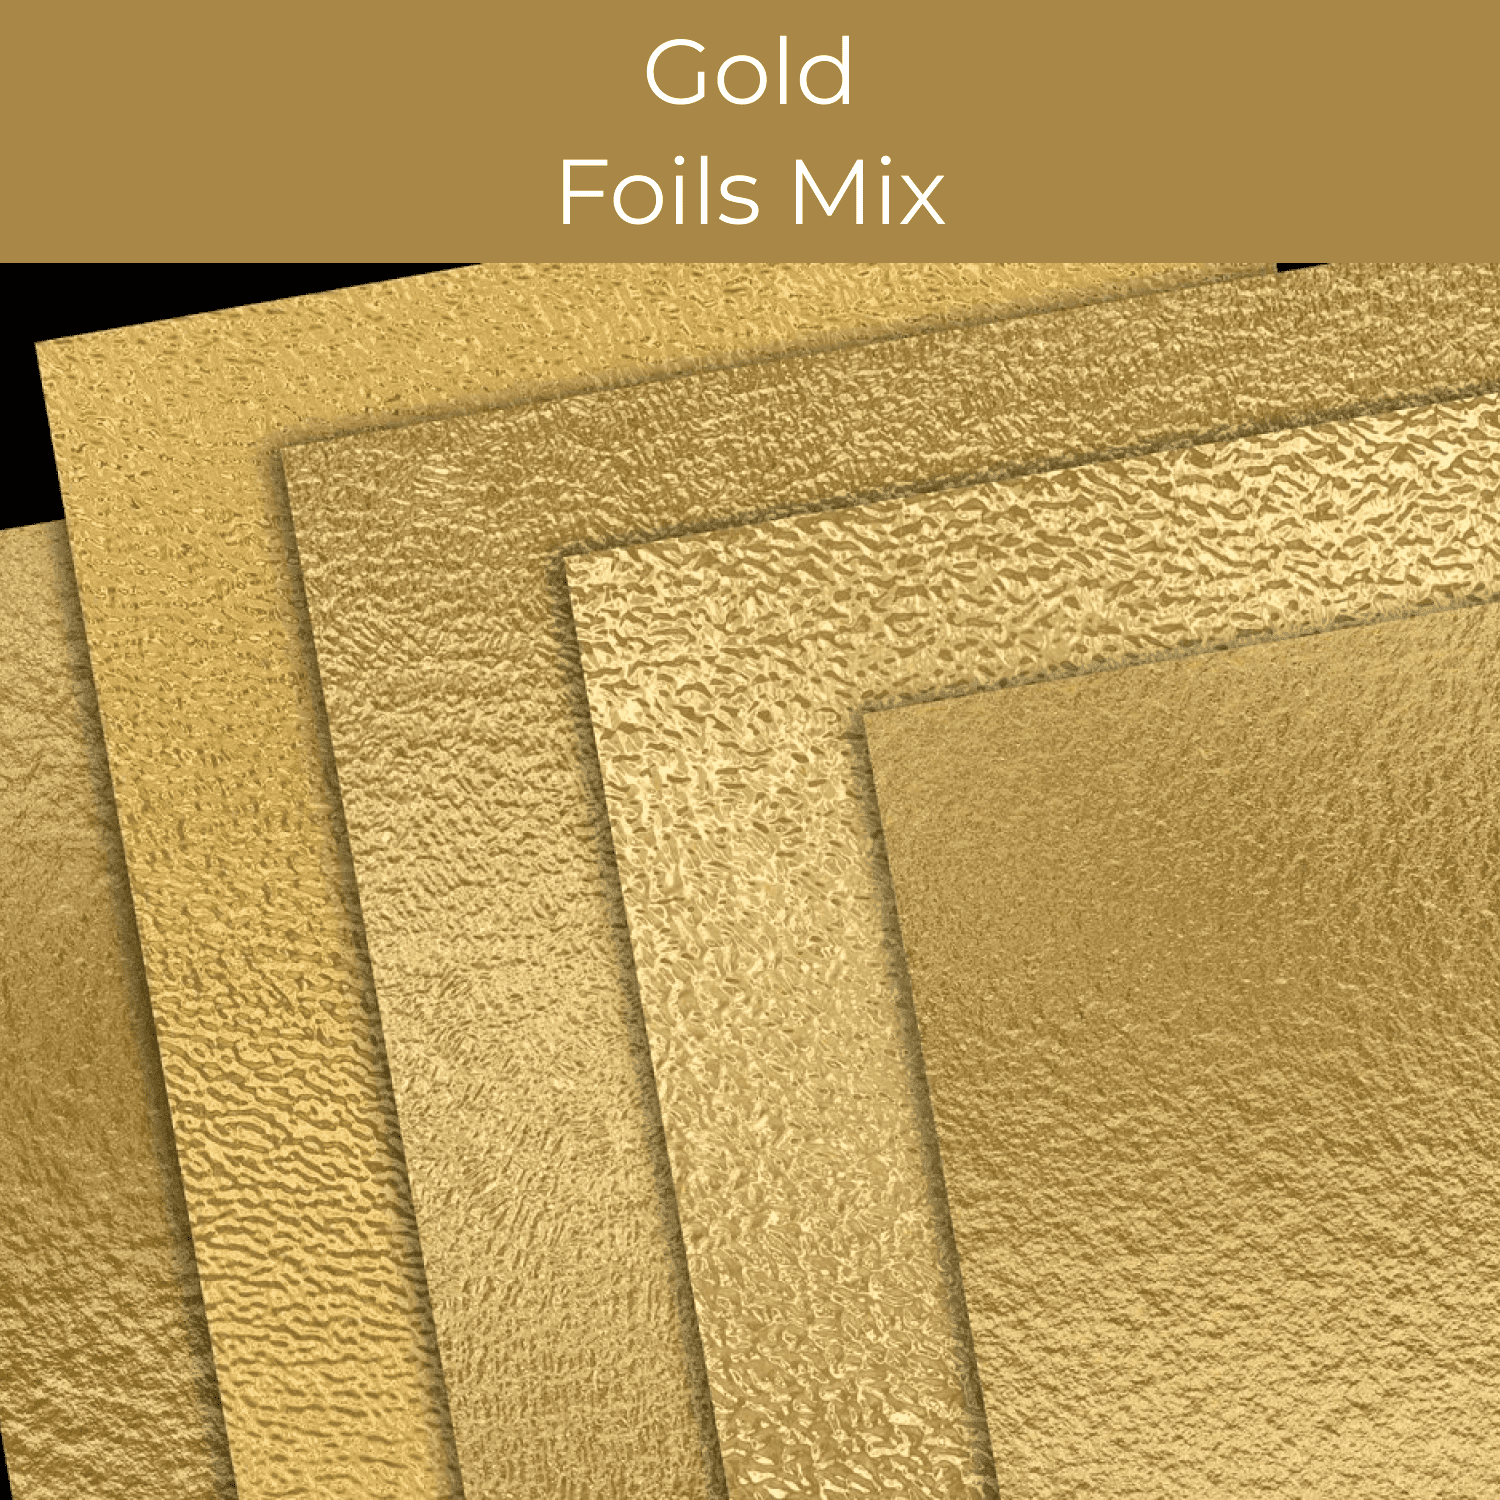 Gold Foils Mix cover.